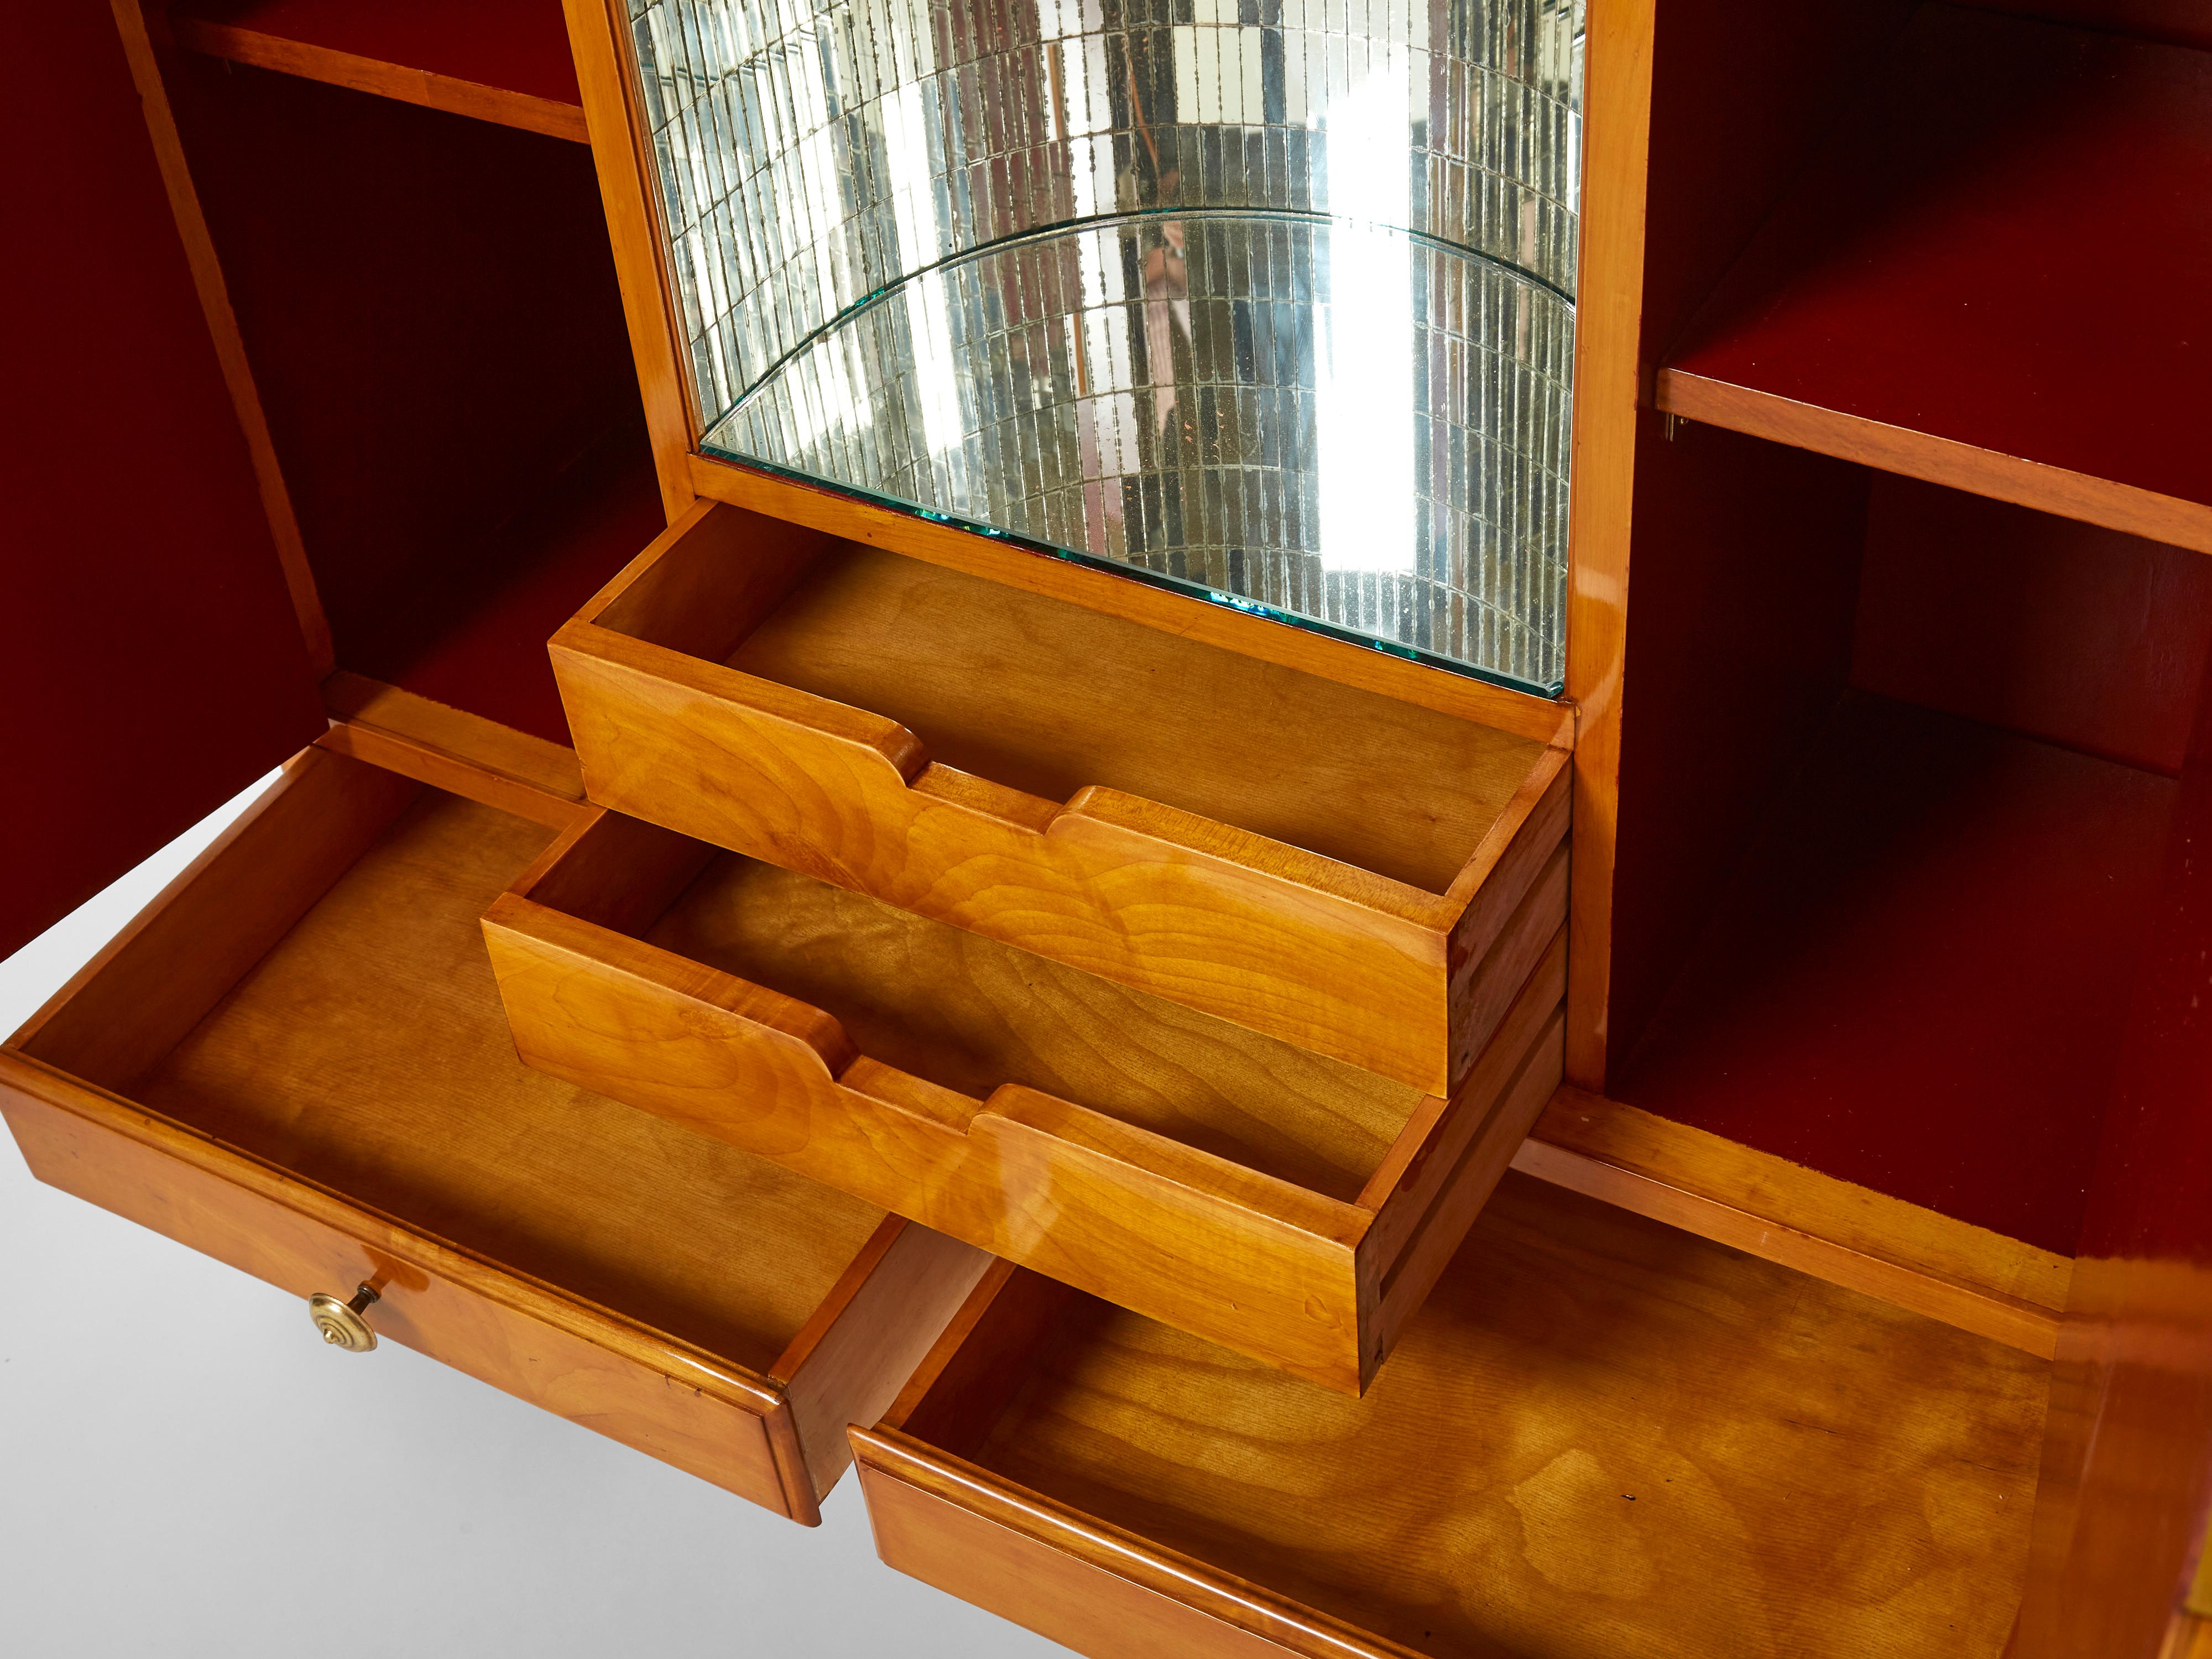 Osvaldo Borsani Cherry Wood Mirrored Bar Cabinet for Abv, 1940 For Sale 1